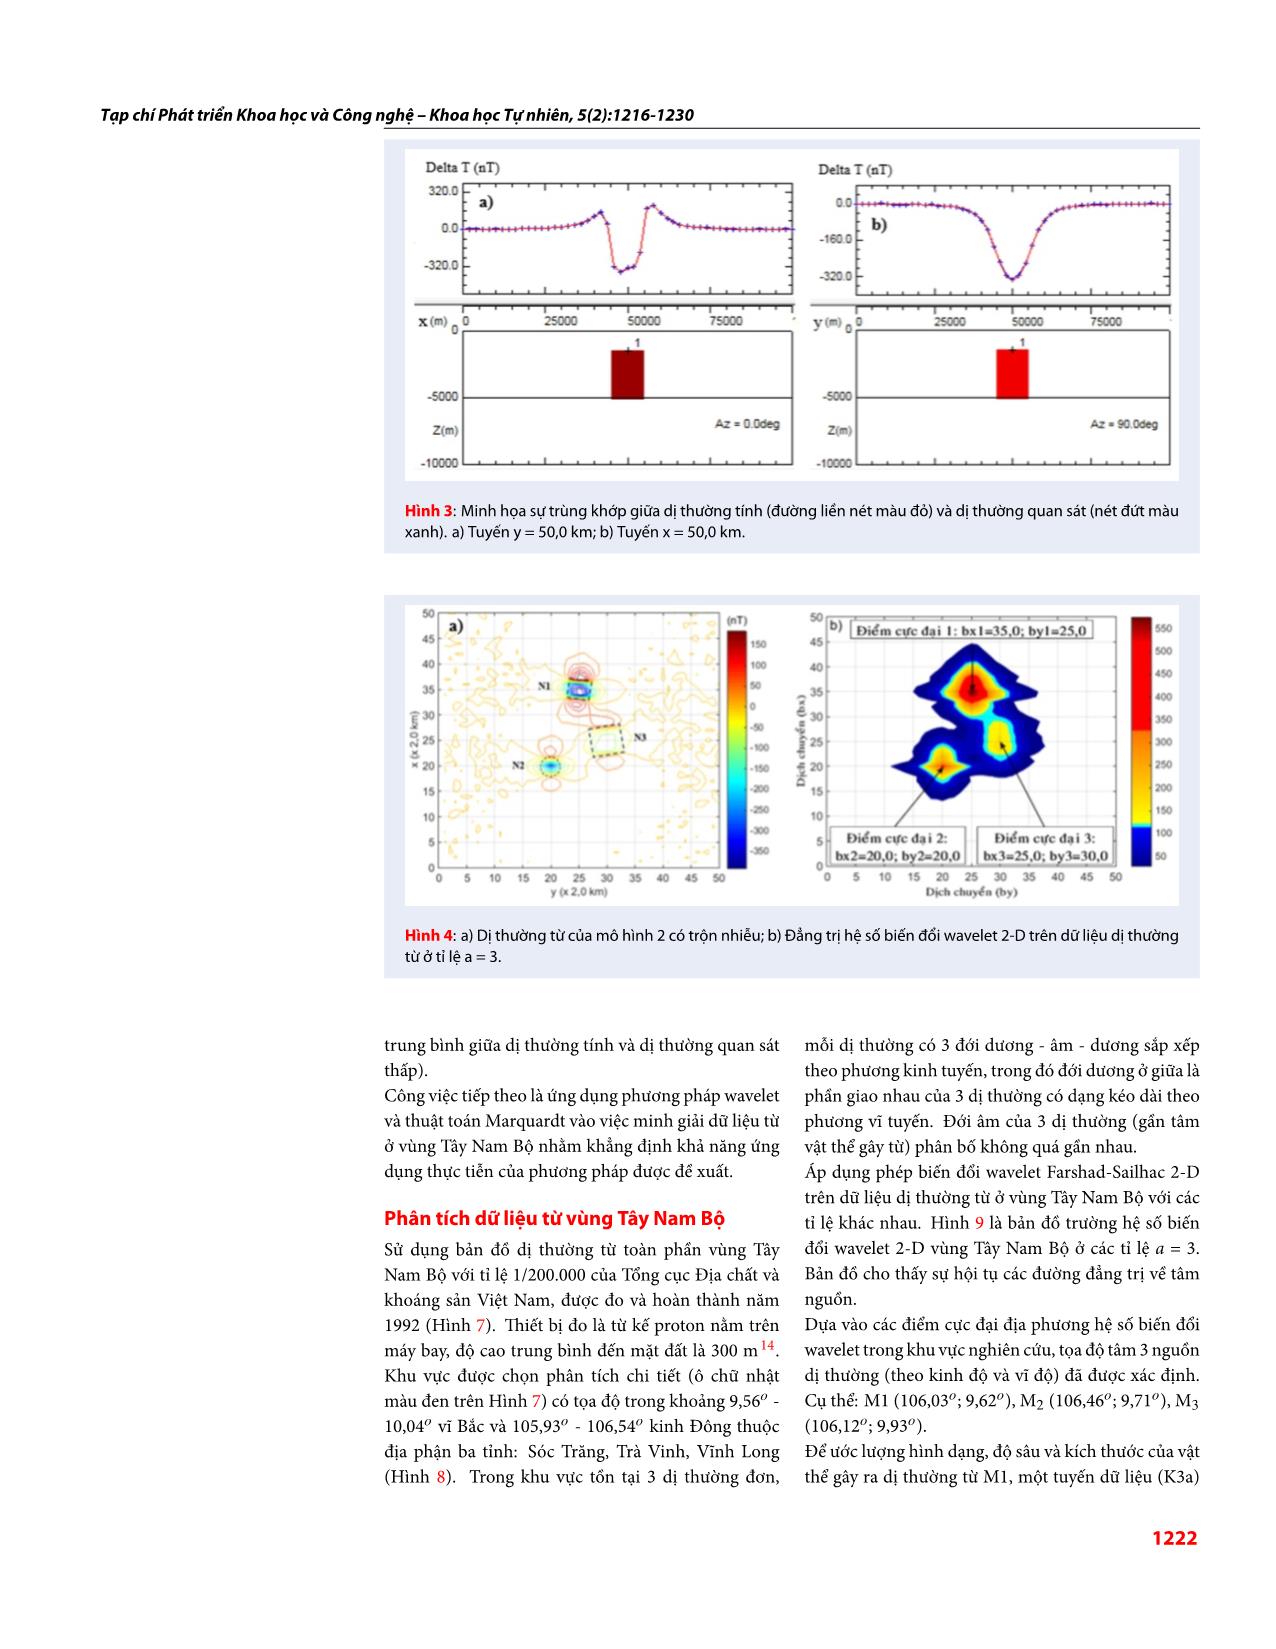 Phân tích dữ liệu từ vùng vĩ độ thấp sử dụng phép biến đổi wavelet và thuật toán marquardt trang 7